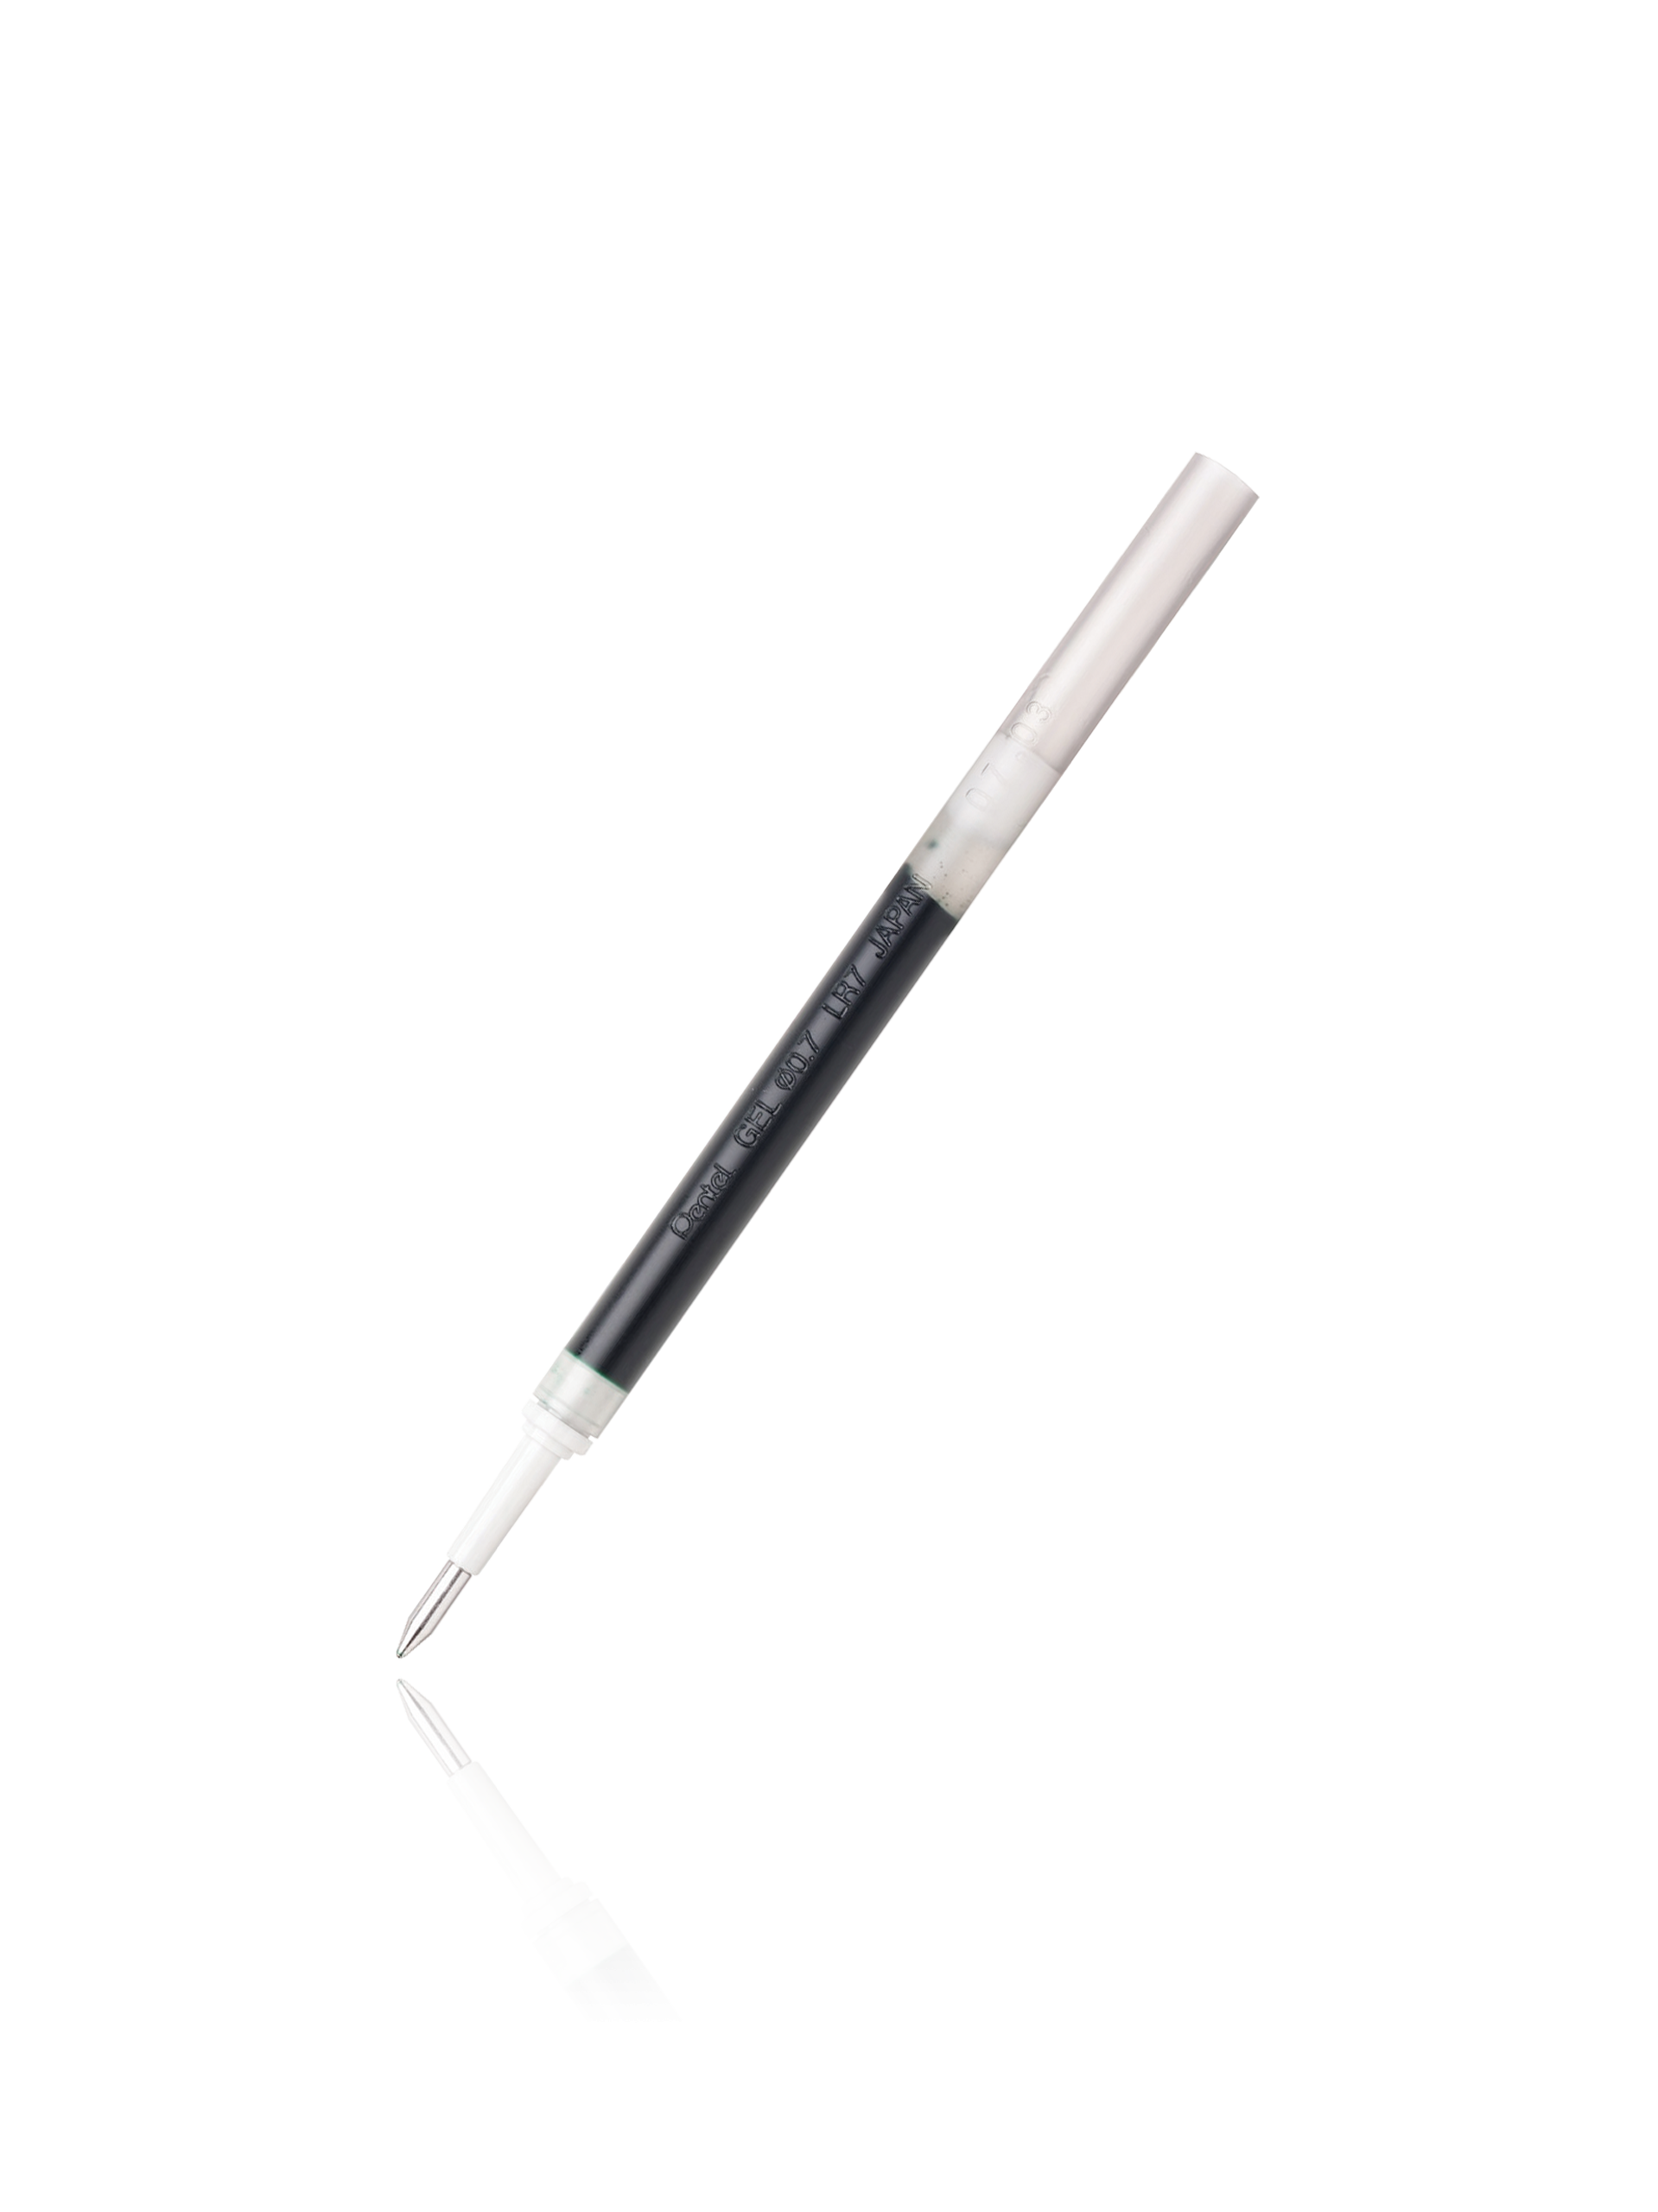 Pentel® EnerGel Liquid Gel Refill, 0.7mm, Needle Tip, Black Ink